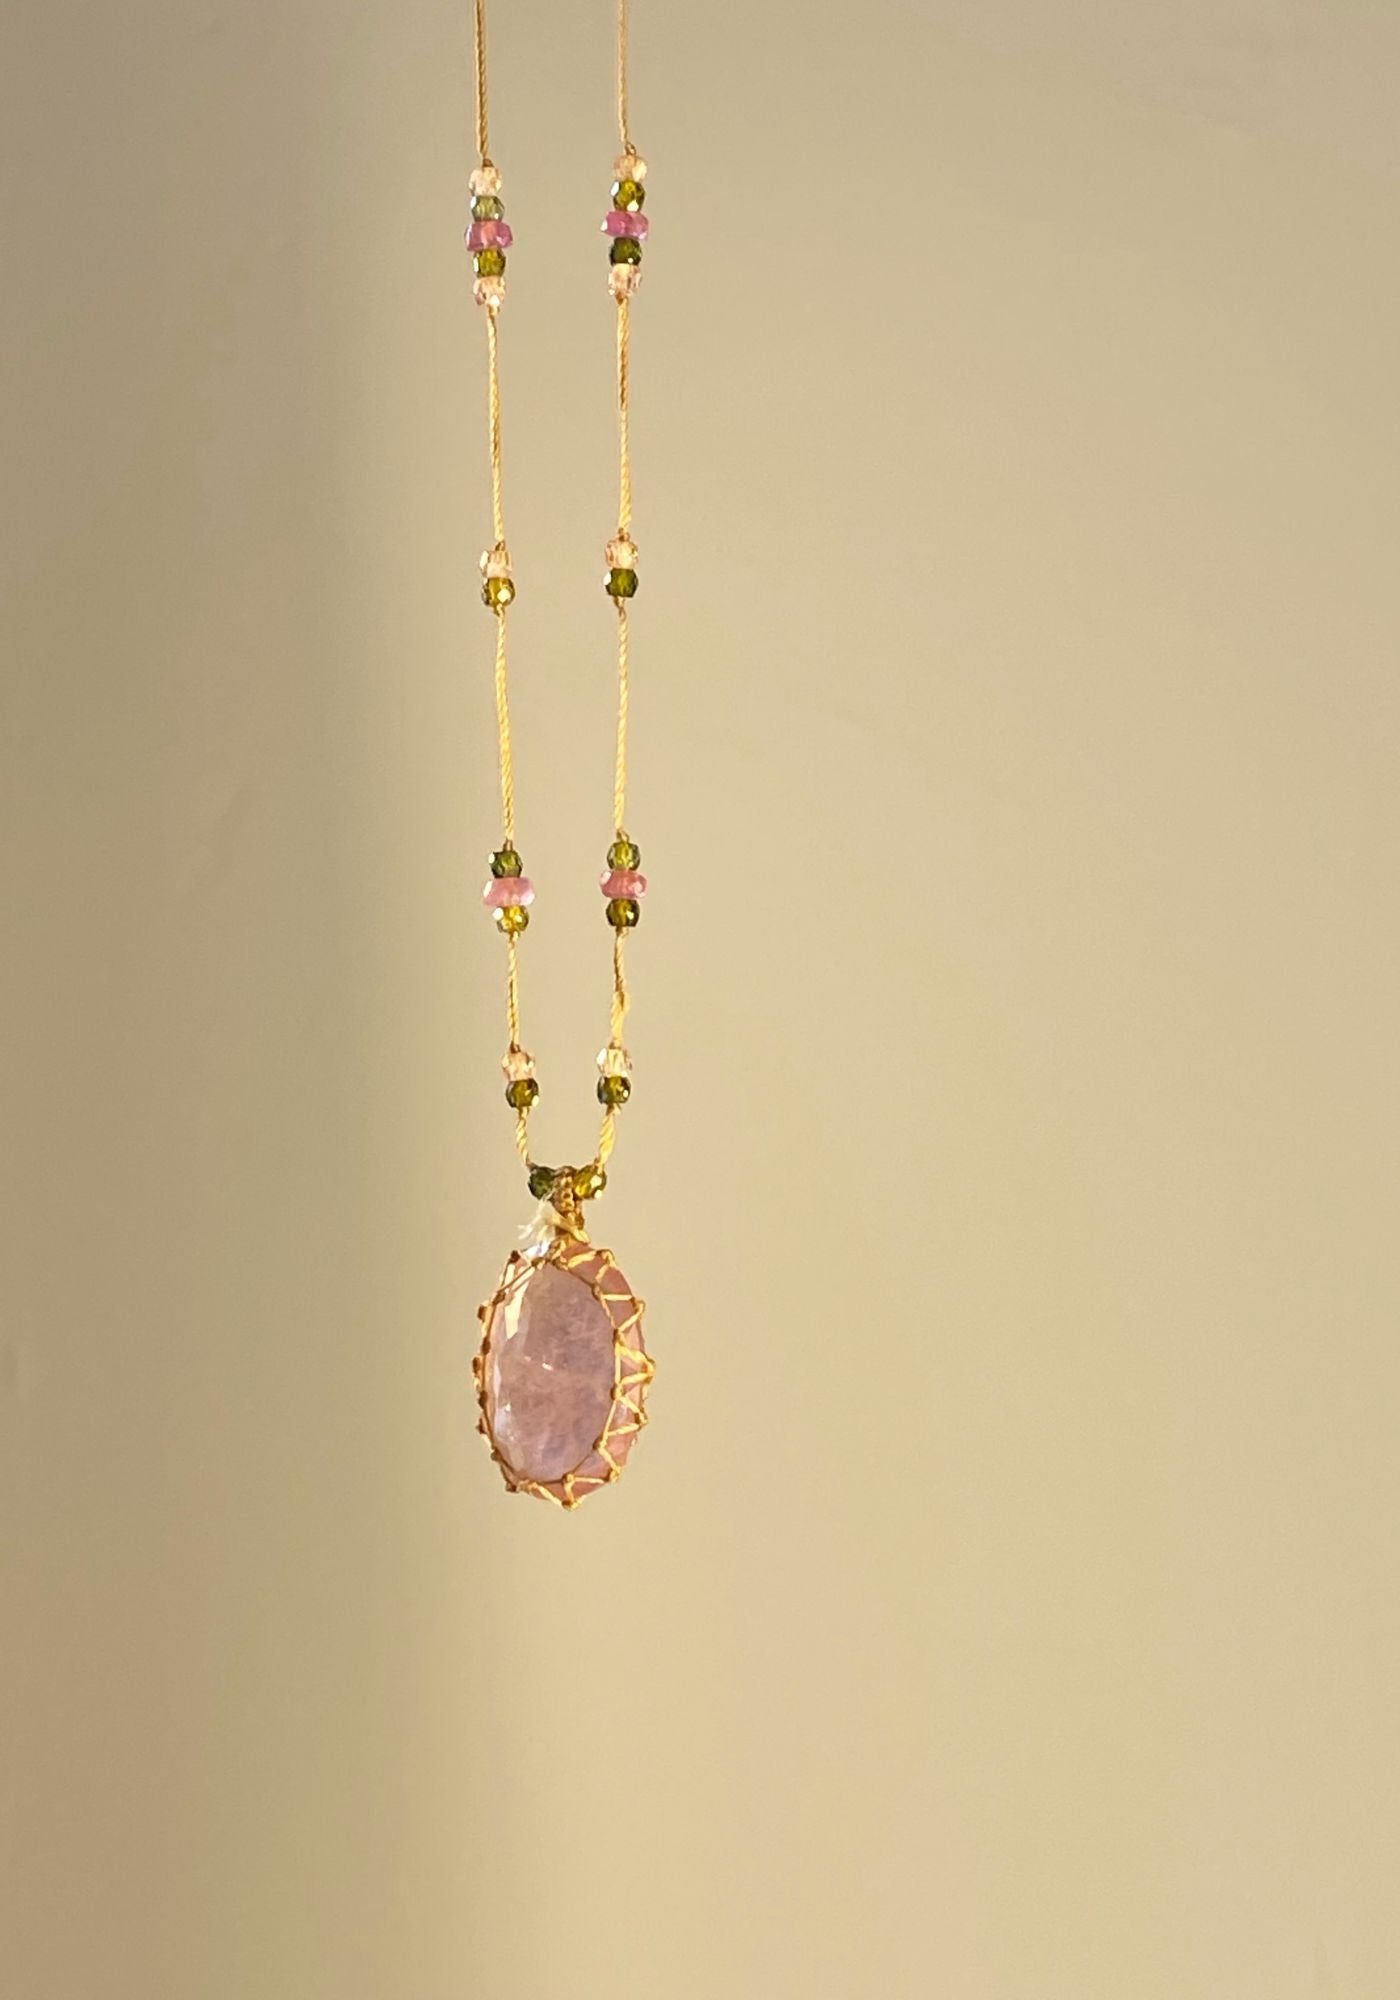 pierre-collier-tibetain-quartz-strawberry-pink-sharing